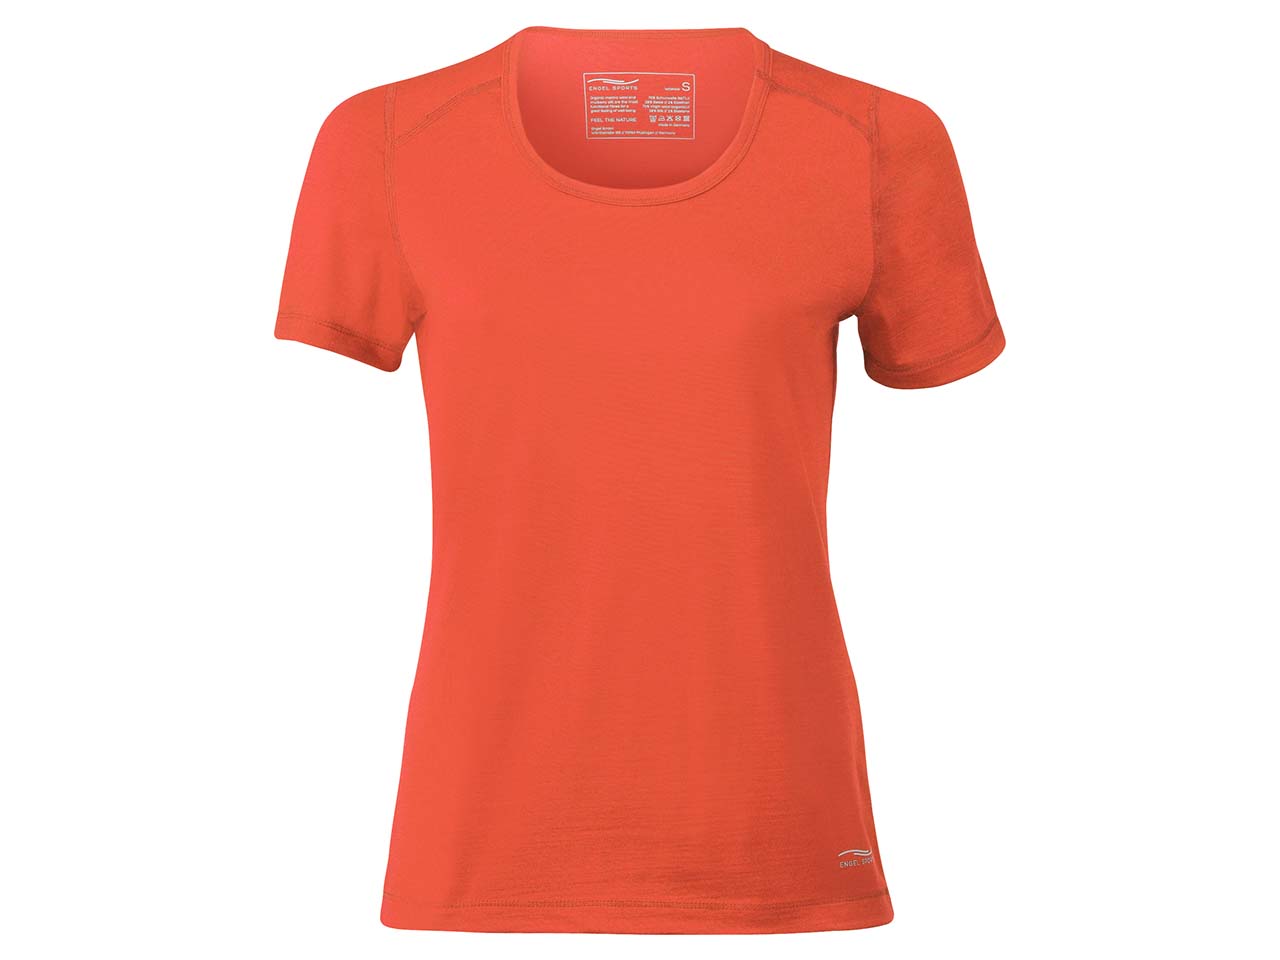 Engel Sports Damen Shirt Kurzarm elastisch Bio-Schurwolle/Seide 